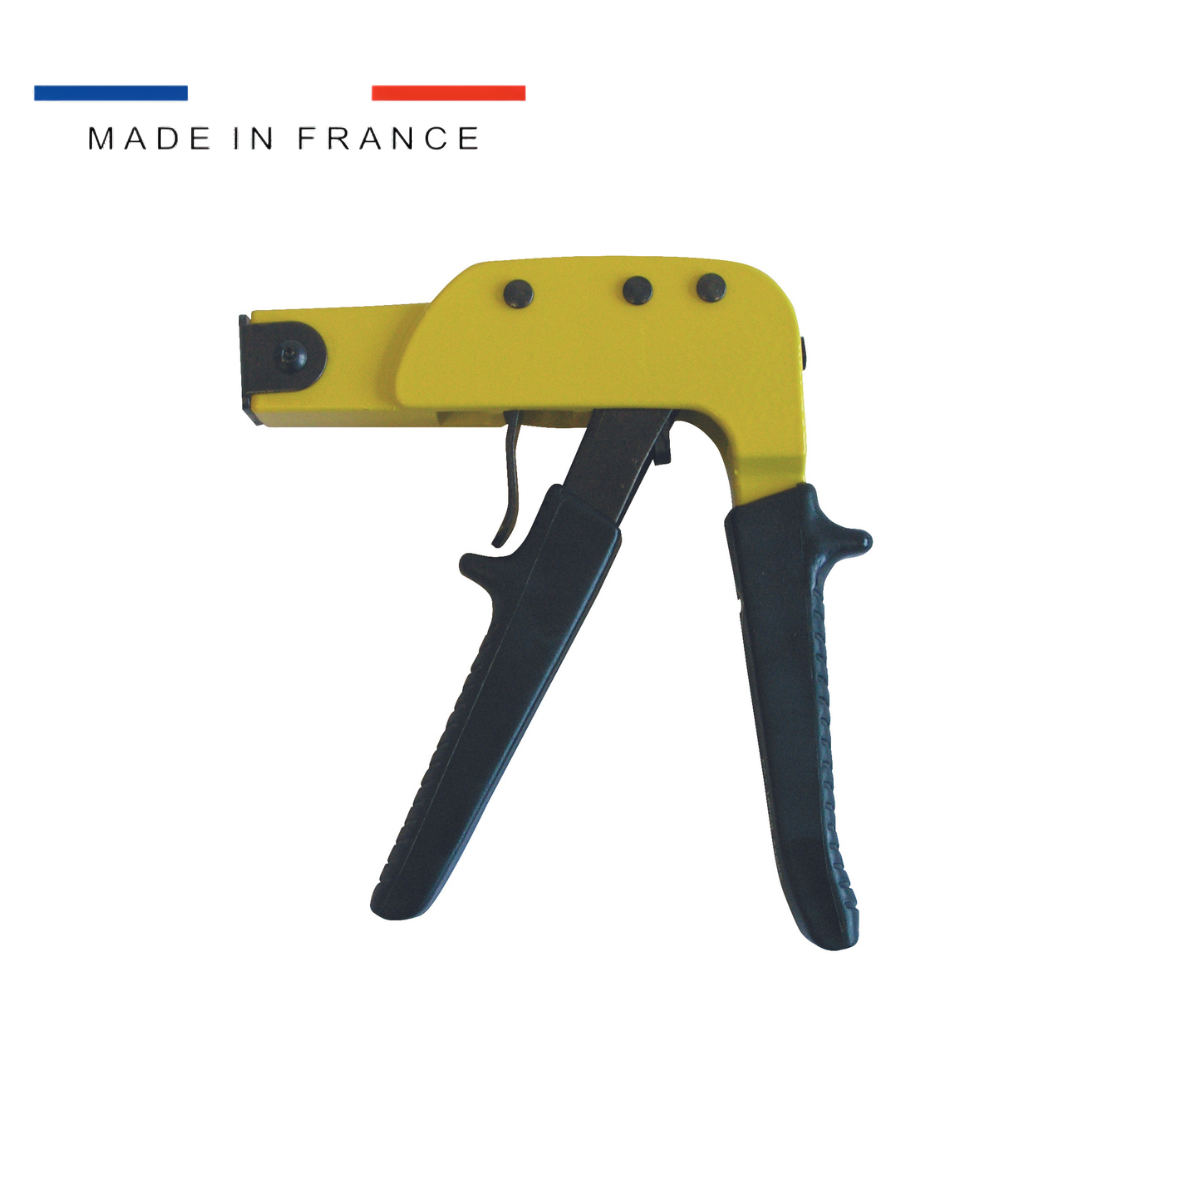 Pince Brik - ING Fixations - Fixations professionnelles pour les  menuisiers, charpentiers, plombiers, électriciens.